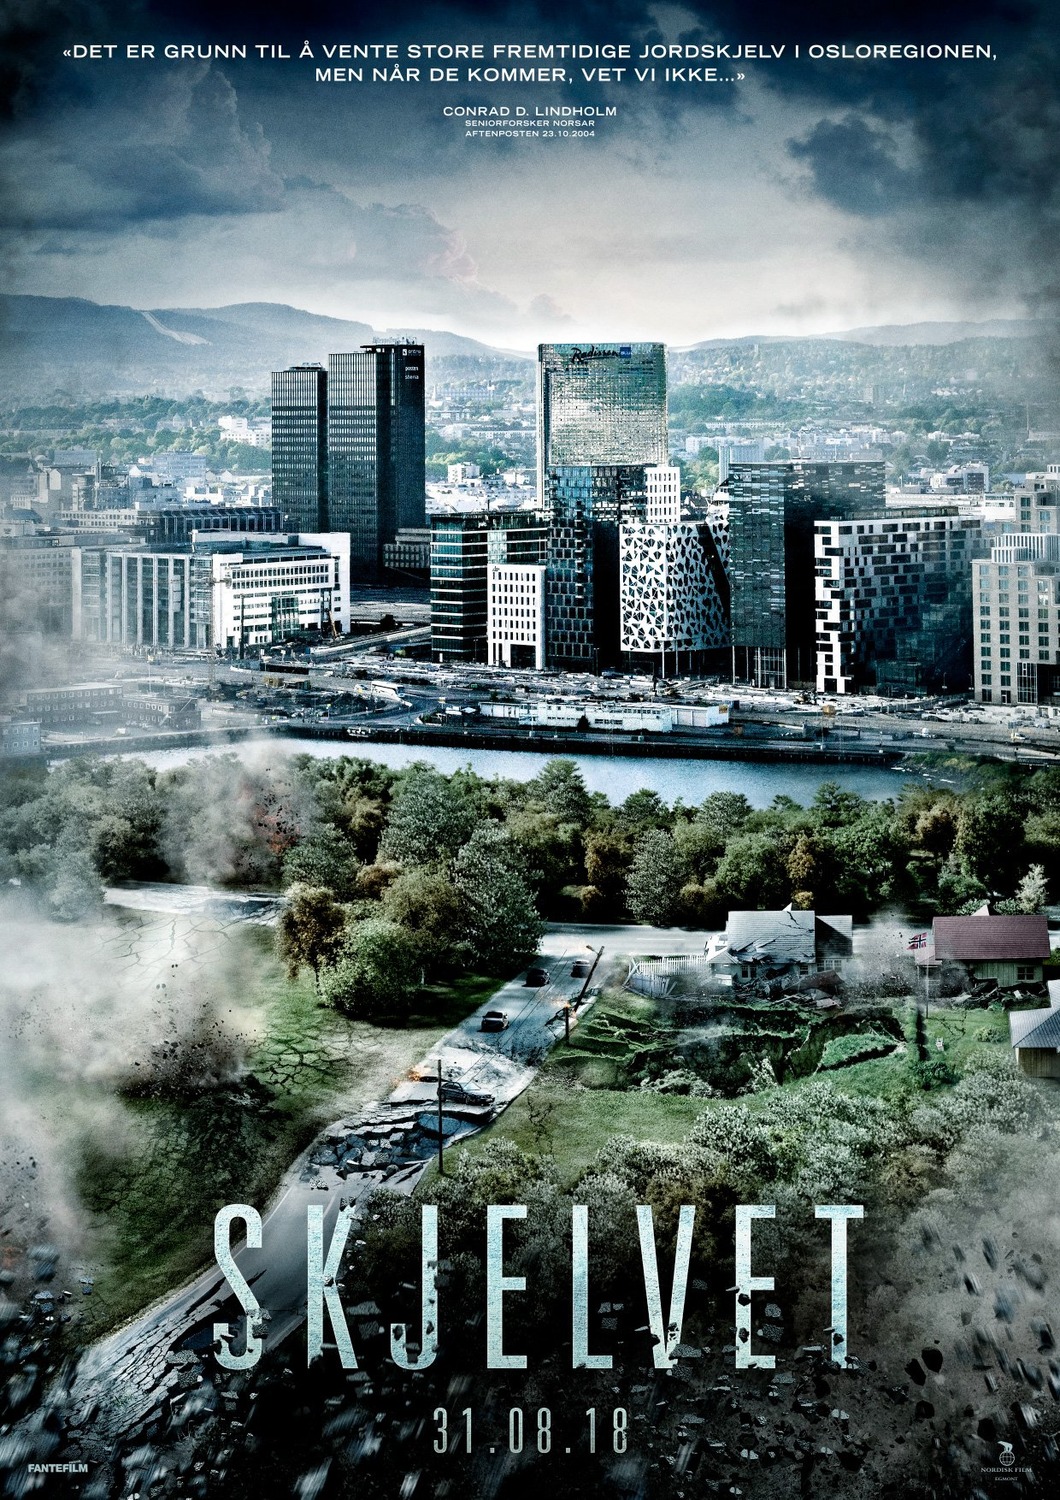 Extra Large Movie Poster Image for Skjelvet (#2 of 4)